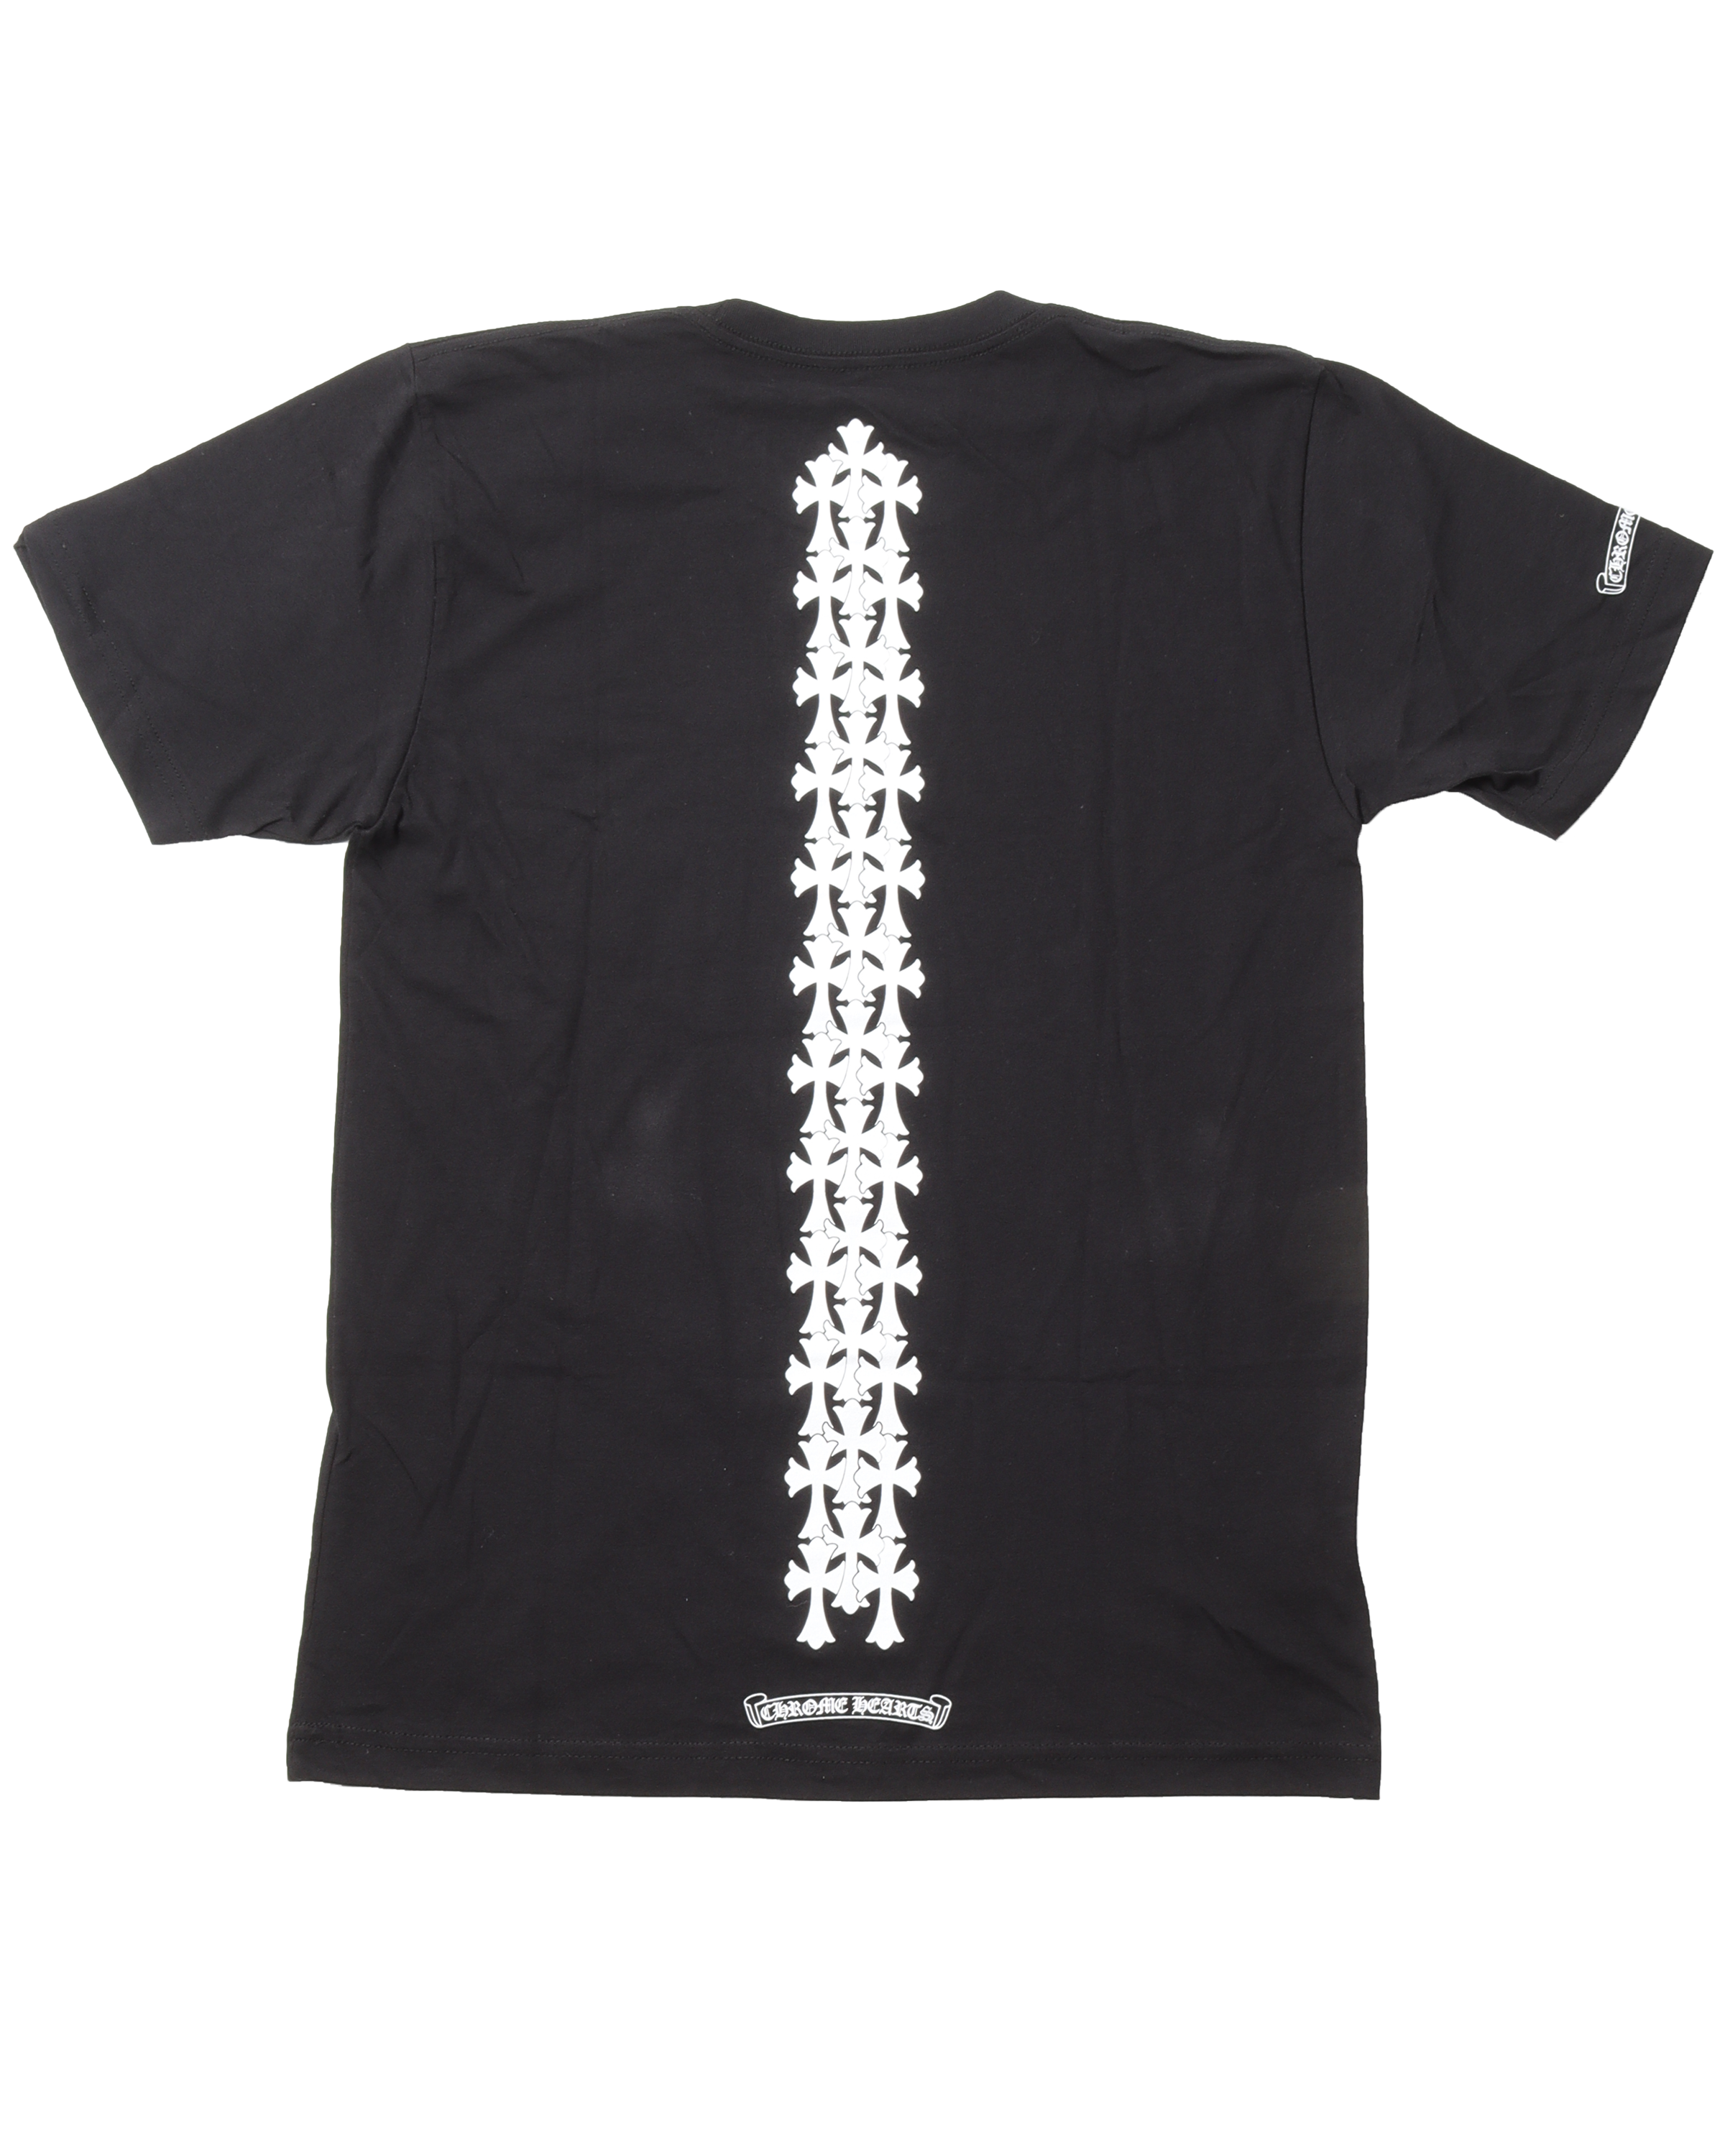 Spine Cross T-shirt